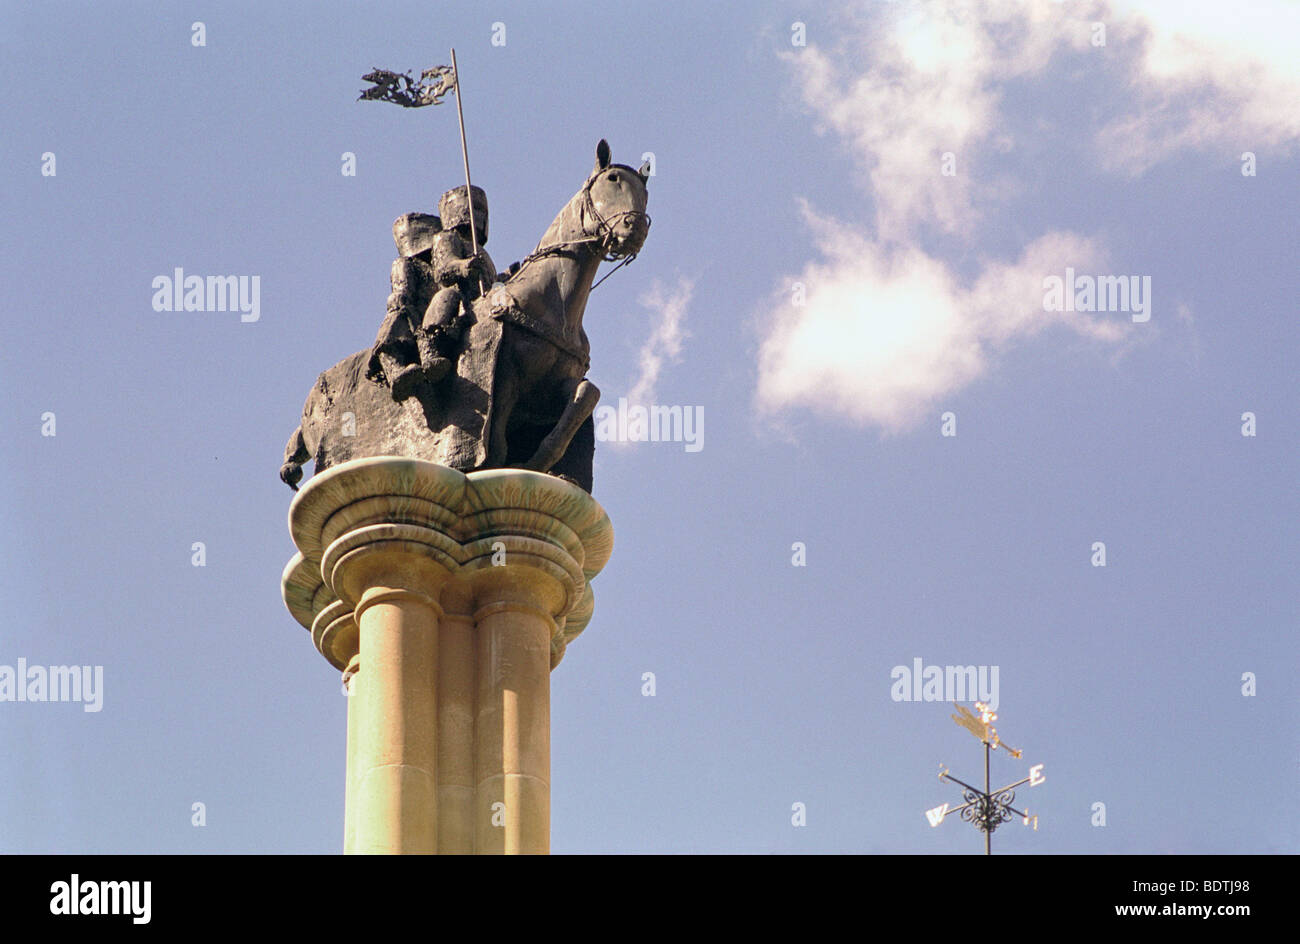 Tempelritter, Statue, Middle Temple, London, zwei Ritter auf dem Pferderücken mit zerrissenem Fahnenpennant. Stockfoto